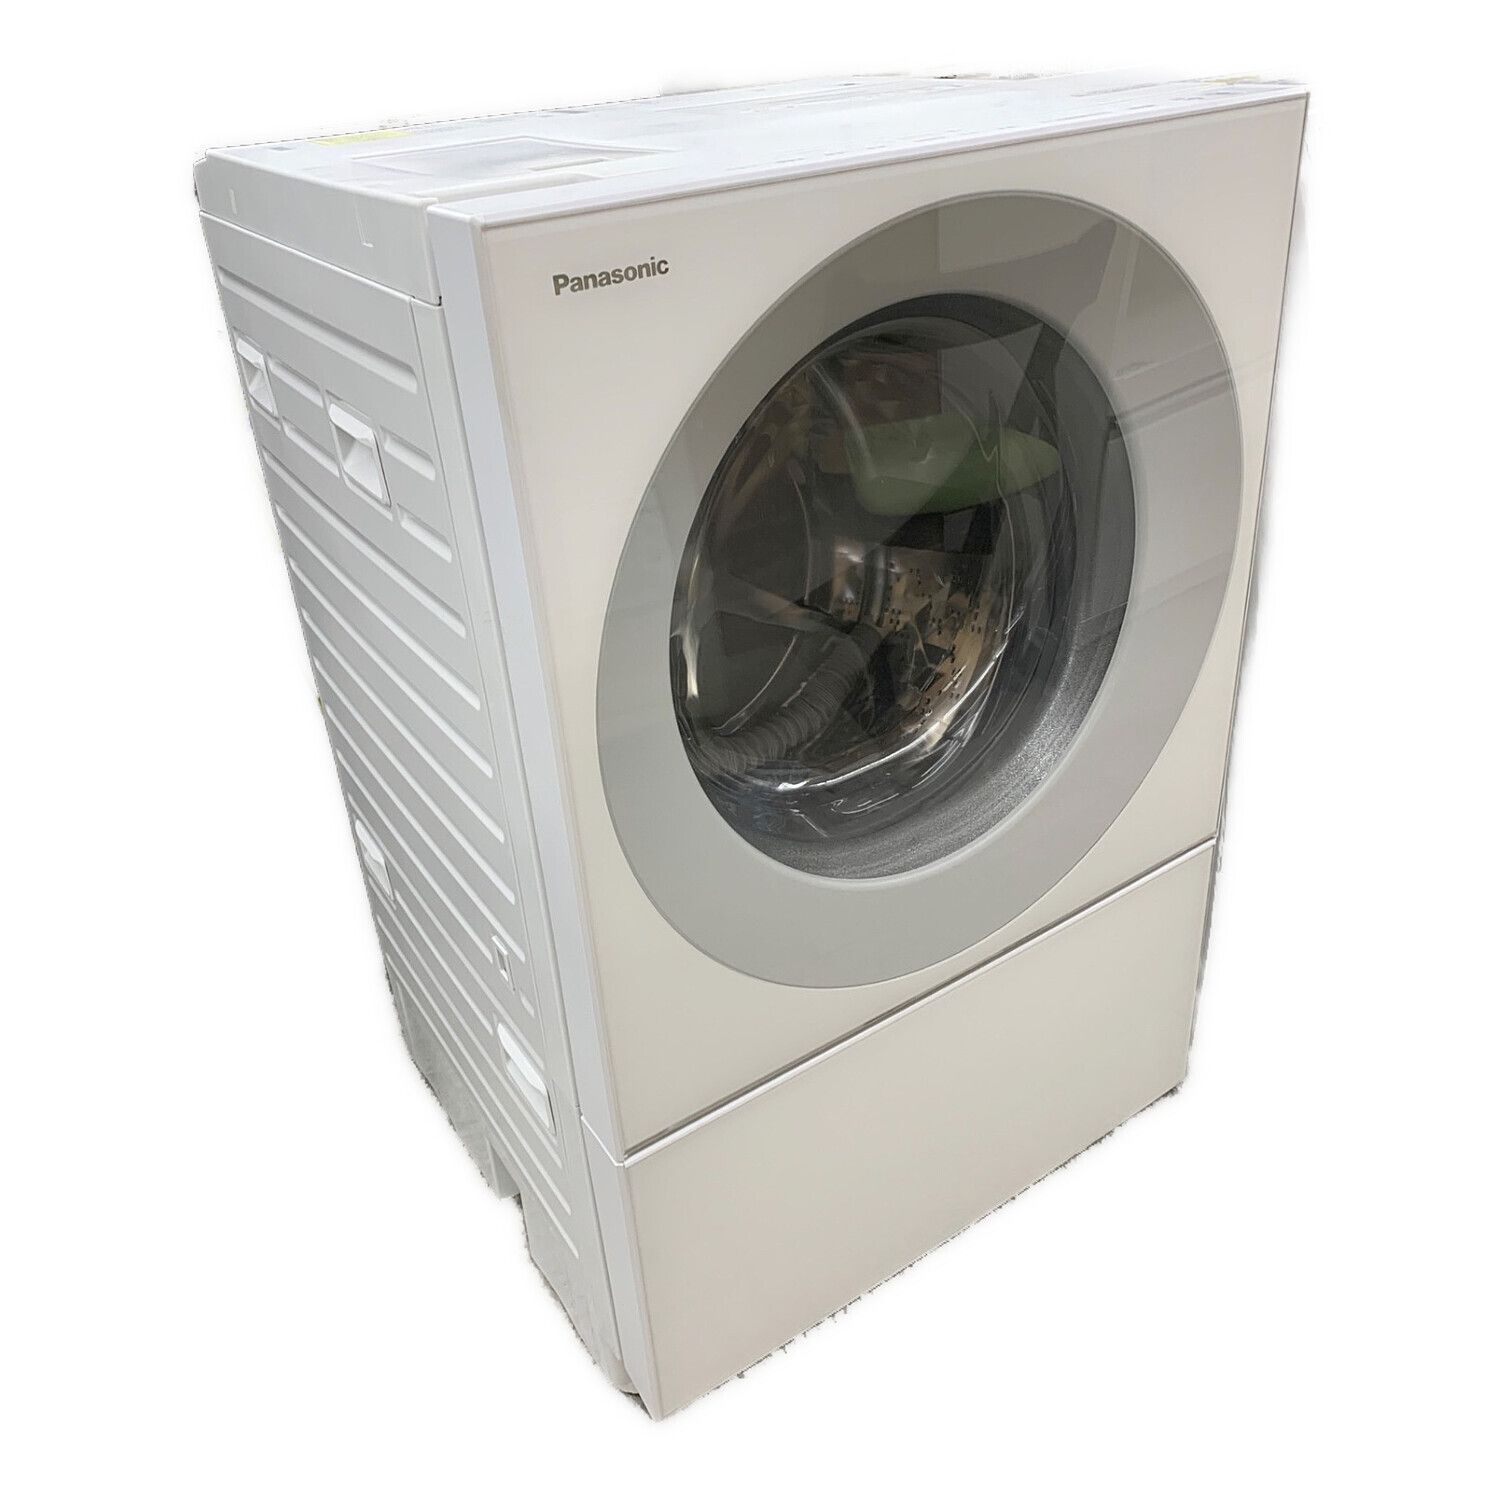 Panasonic NA-VS1000L 10キロ ドラム式洗濯機 2015年 カタログギフトも ...